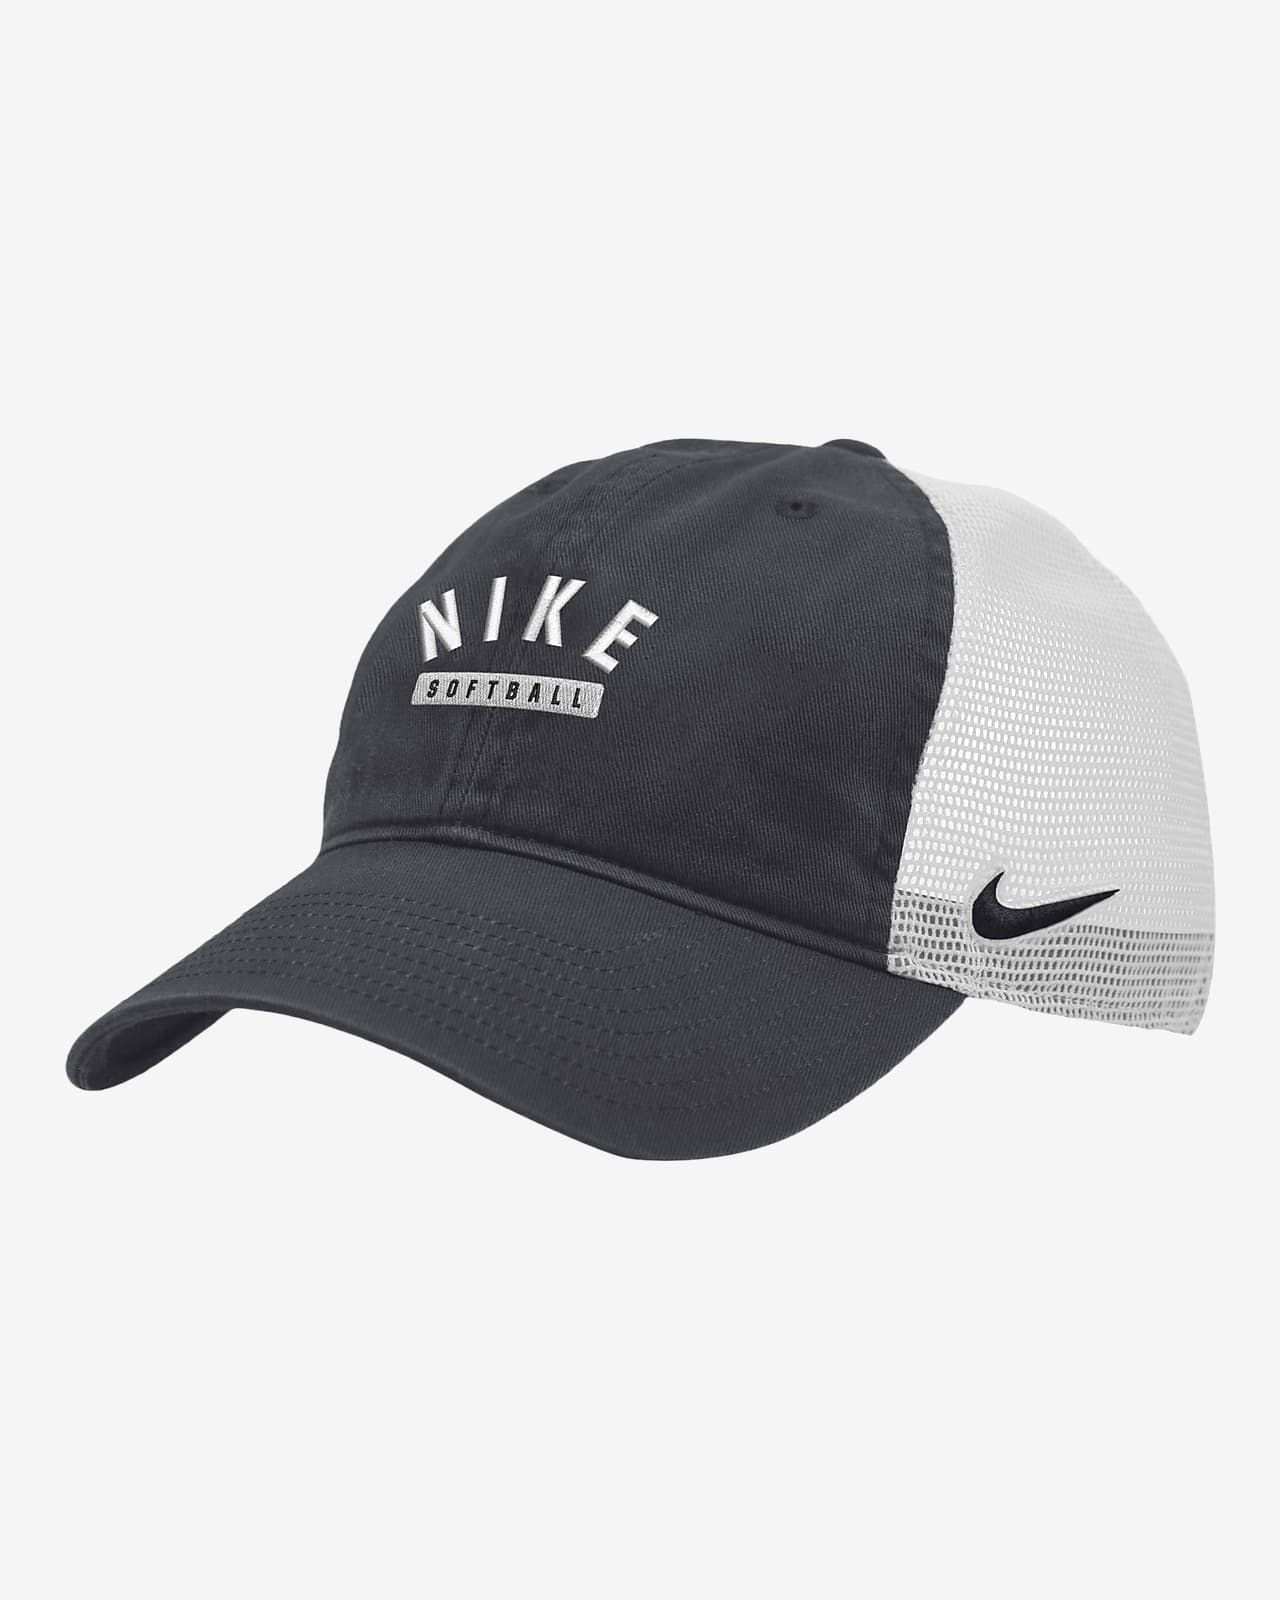 Nike Softball Trucker Hat